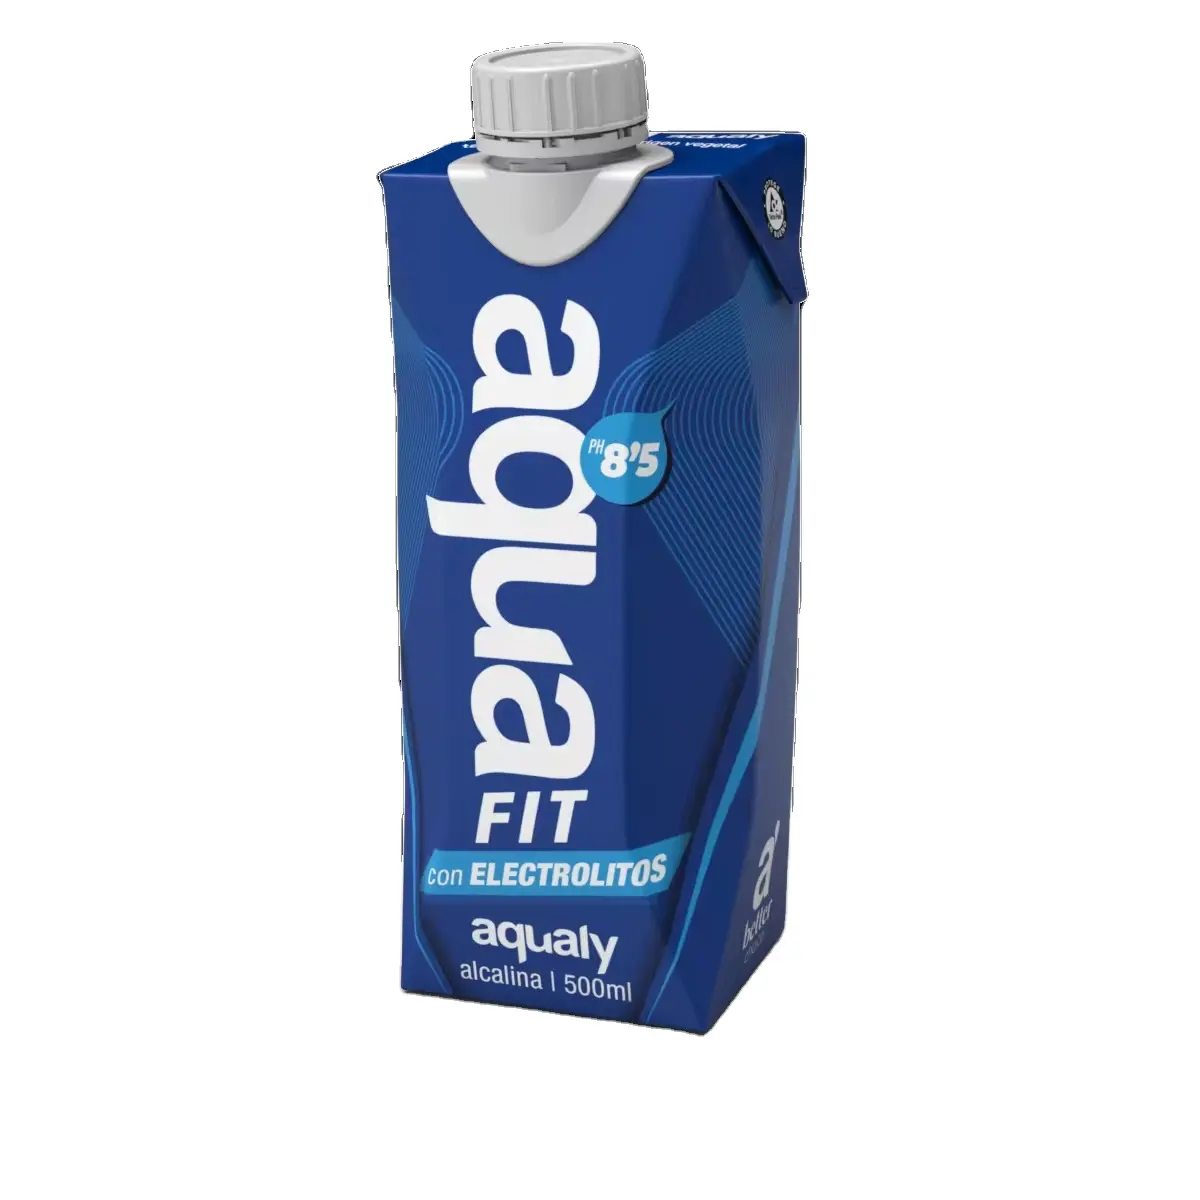 LY perusahaan tingkat tinggi Magnesium olahraga minuman air fungsional merek air Aquafit 500ml dibuat di Spanyol